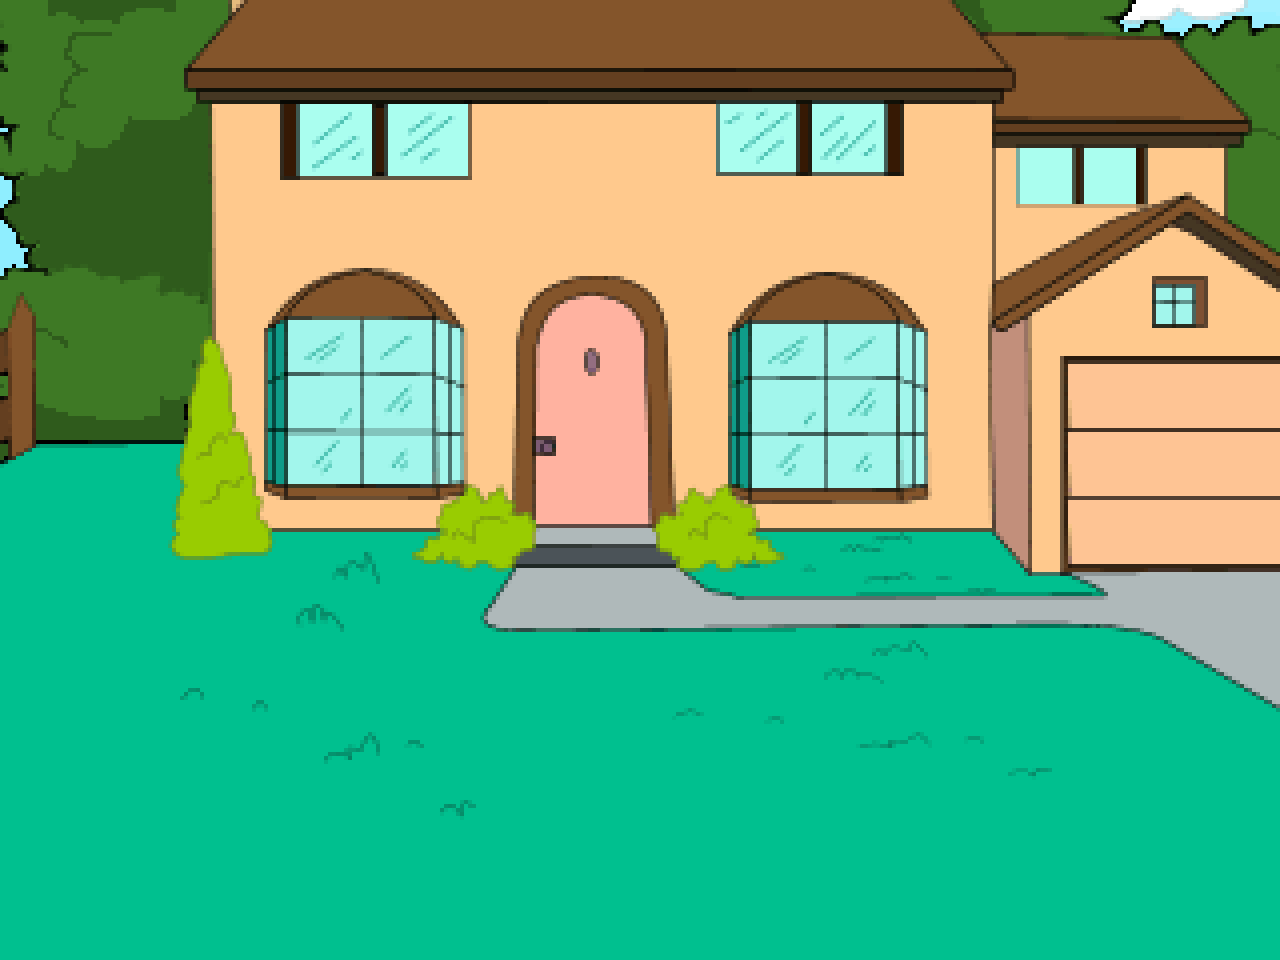 The Simpsons House (Xedarts)